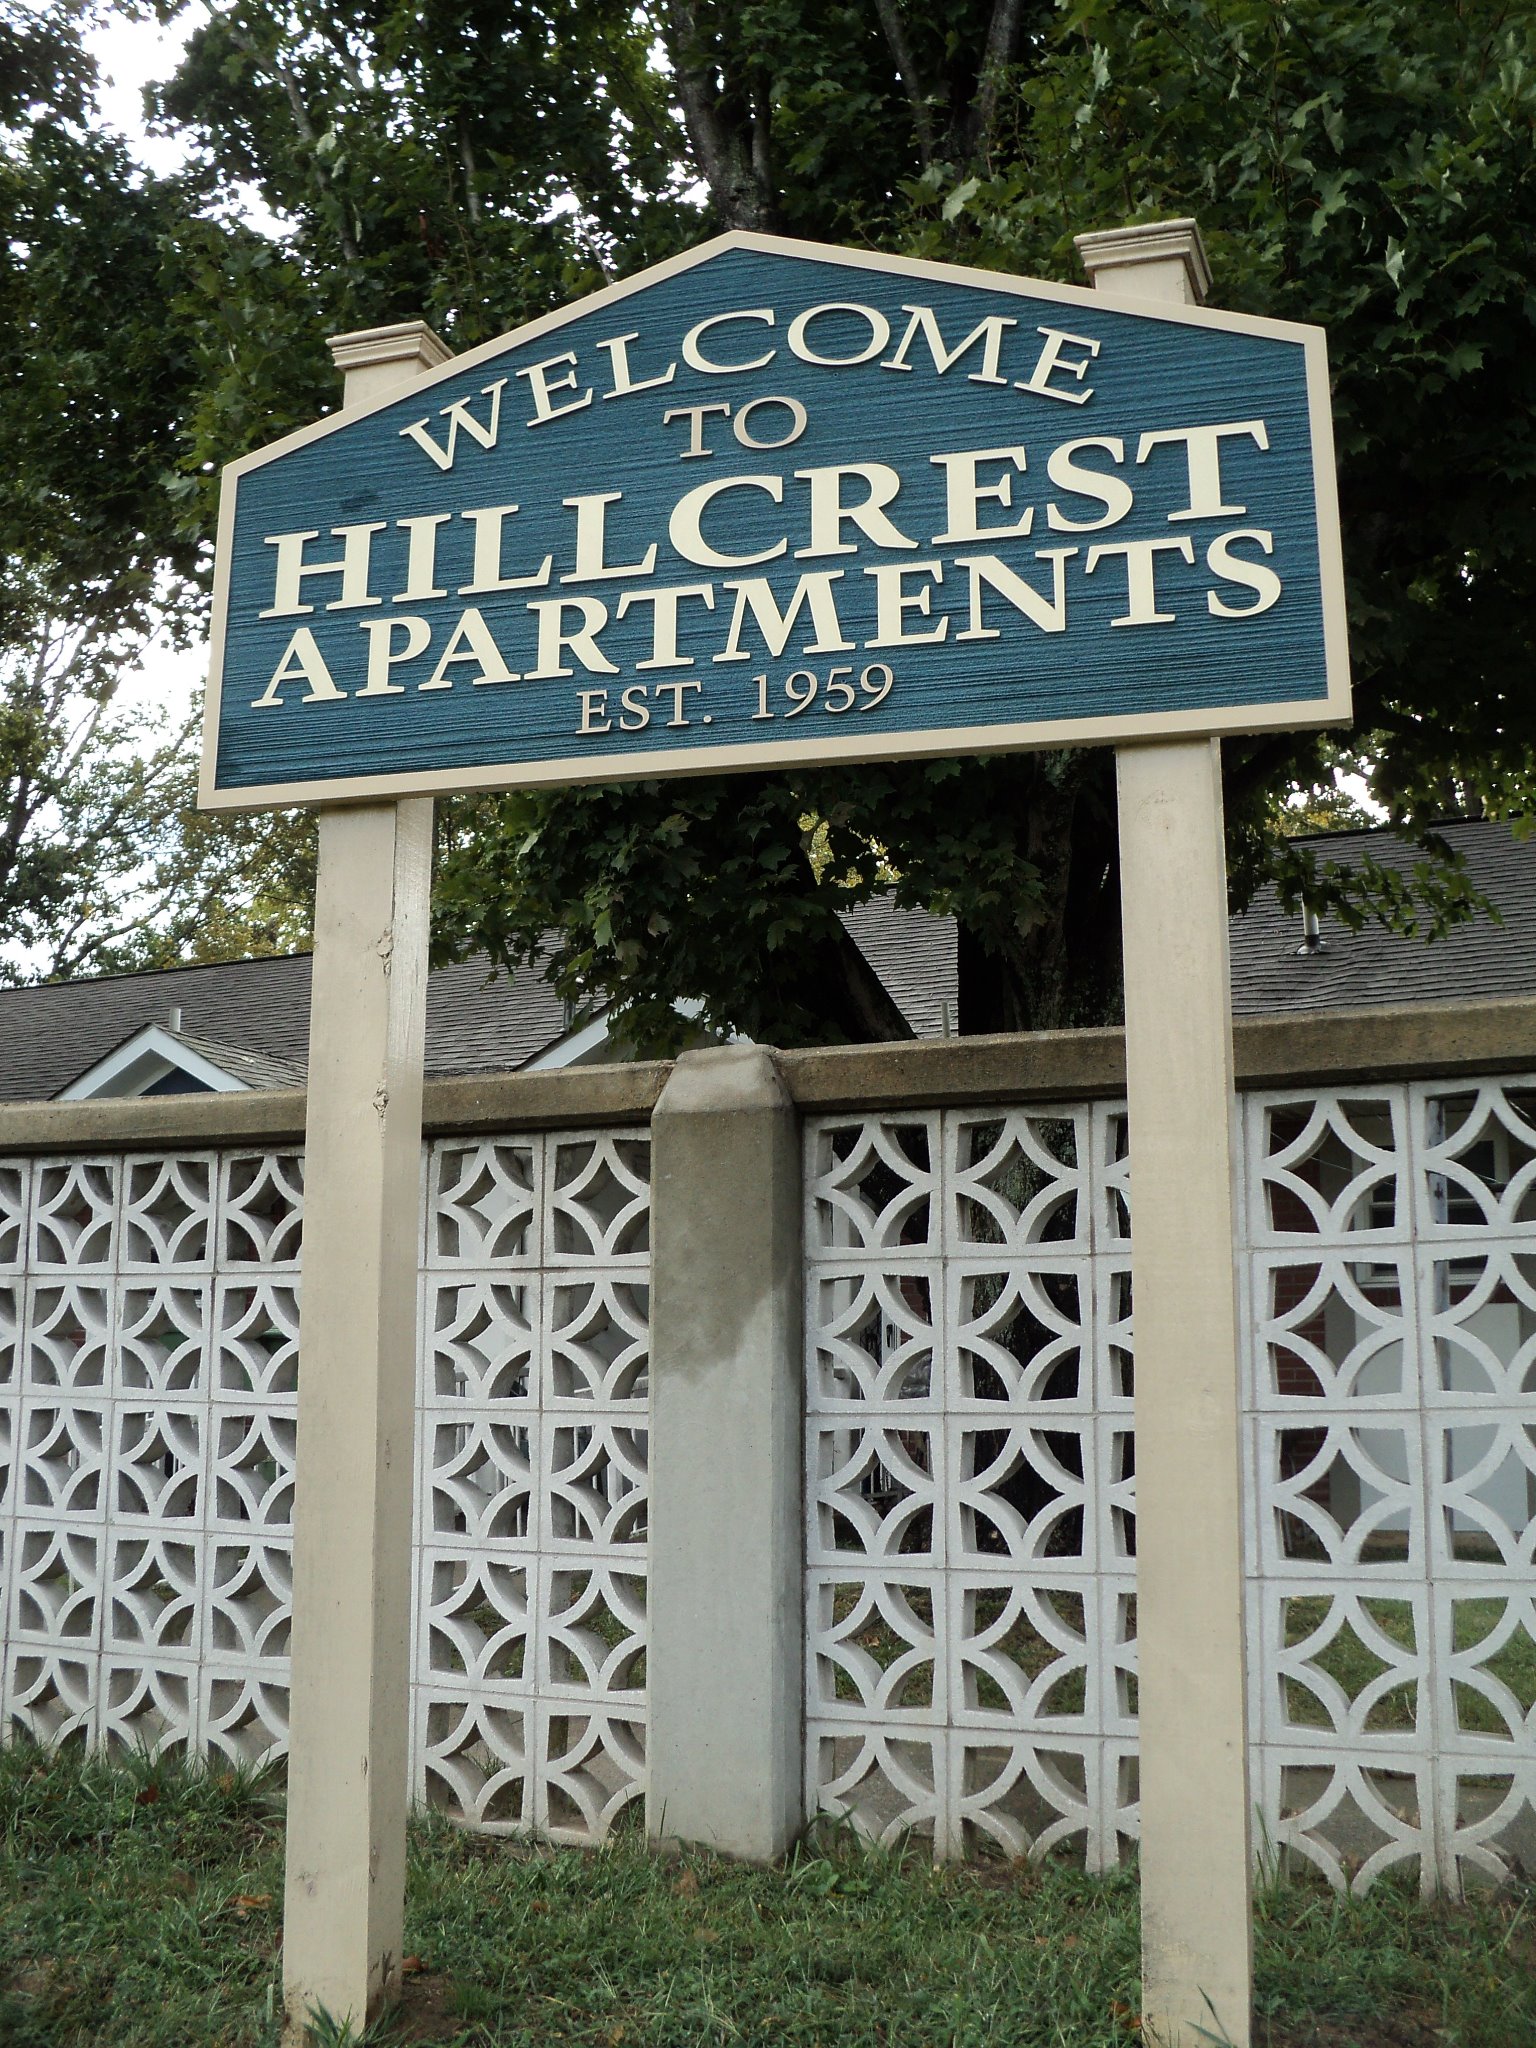 Hillcrest Apartments - Public Housing